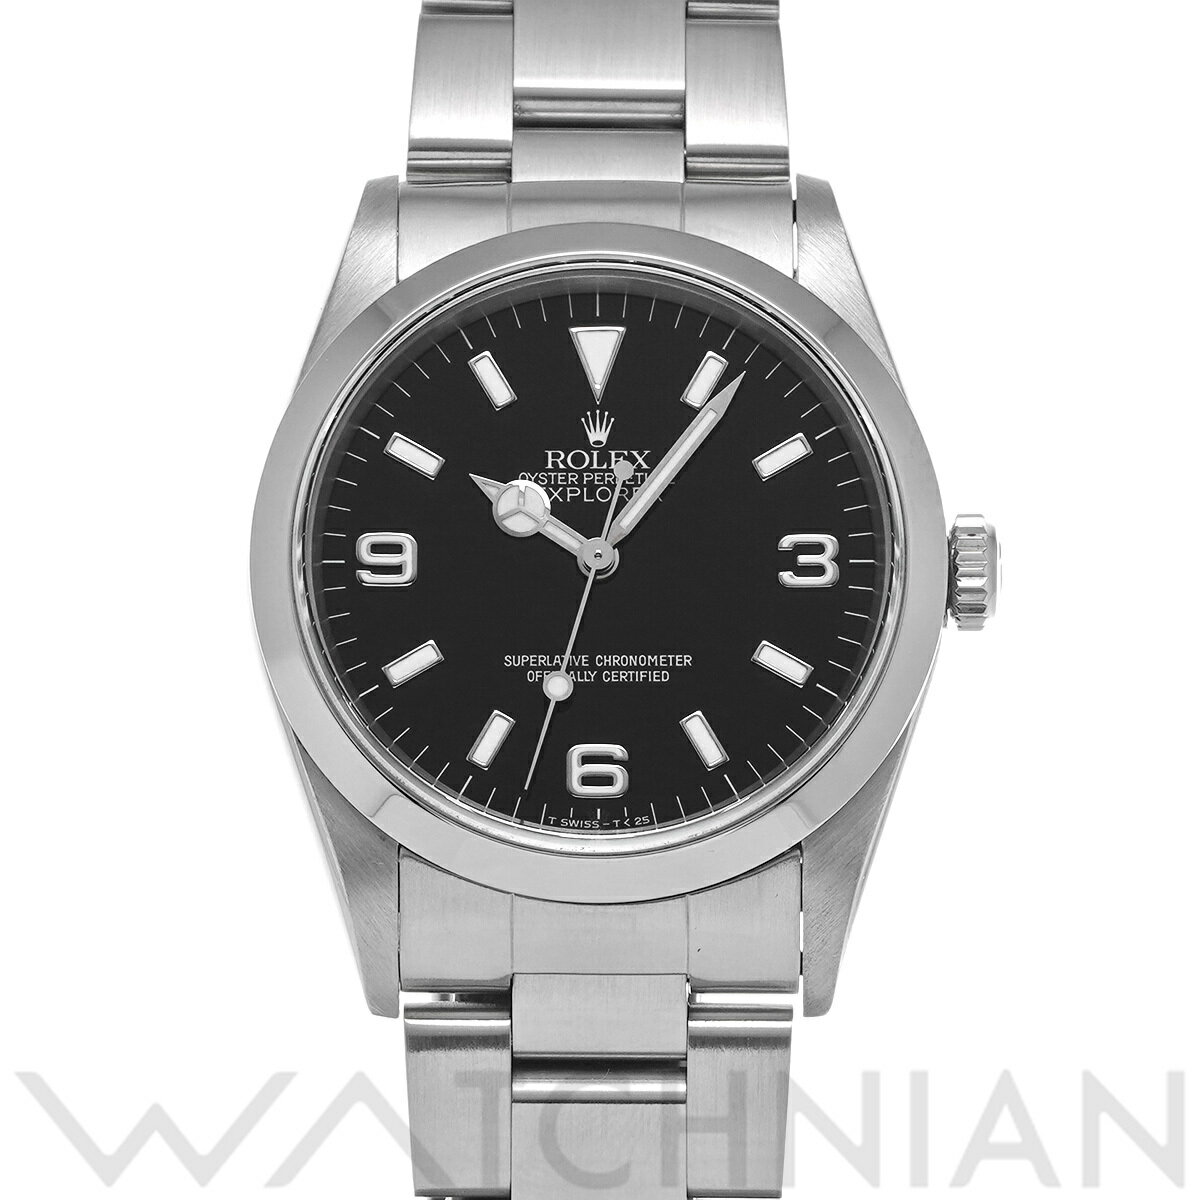 【4種選べるクーポン】【ローン60回払い無金利】【中古】 ロレックス ROLEX エクスプローラー 14270 T番(1996年頃製造) ブラック メンズ 腕時計 ロレックス 時計 高級腕時計 ブランド